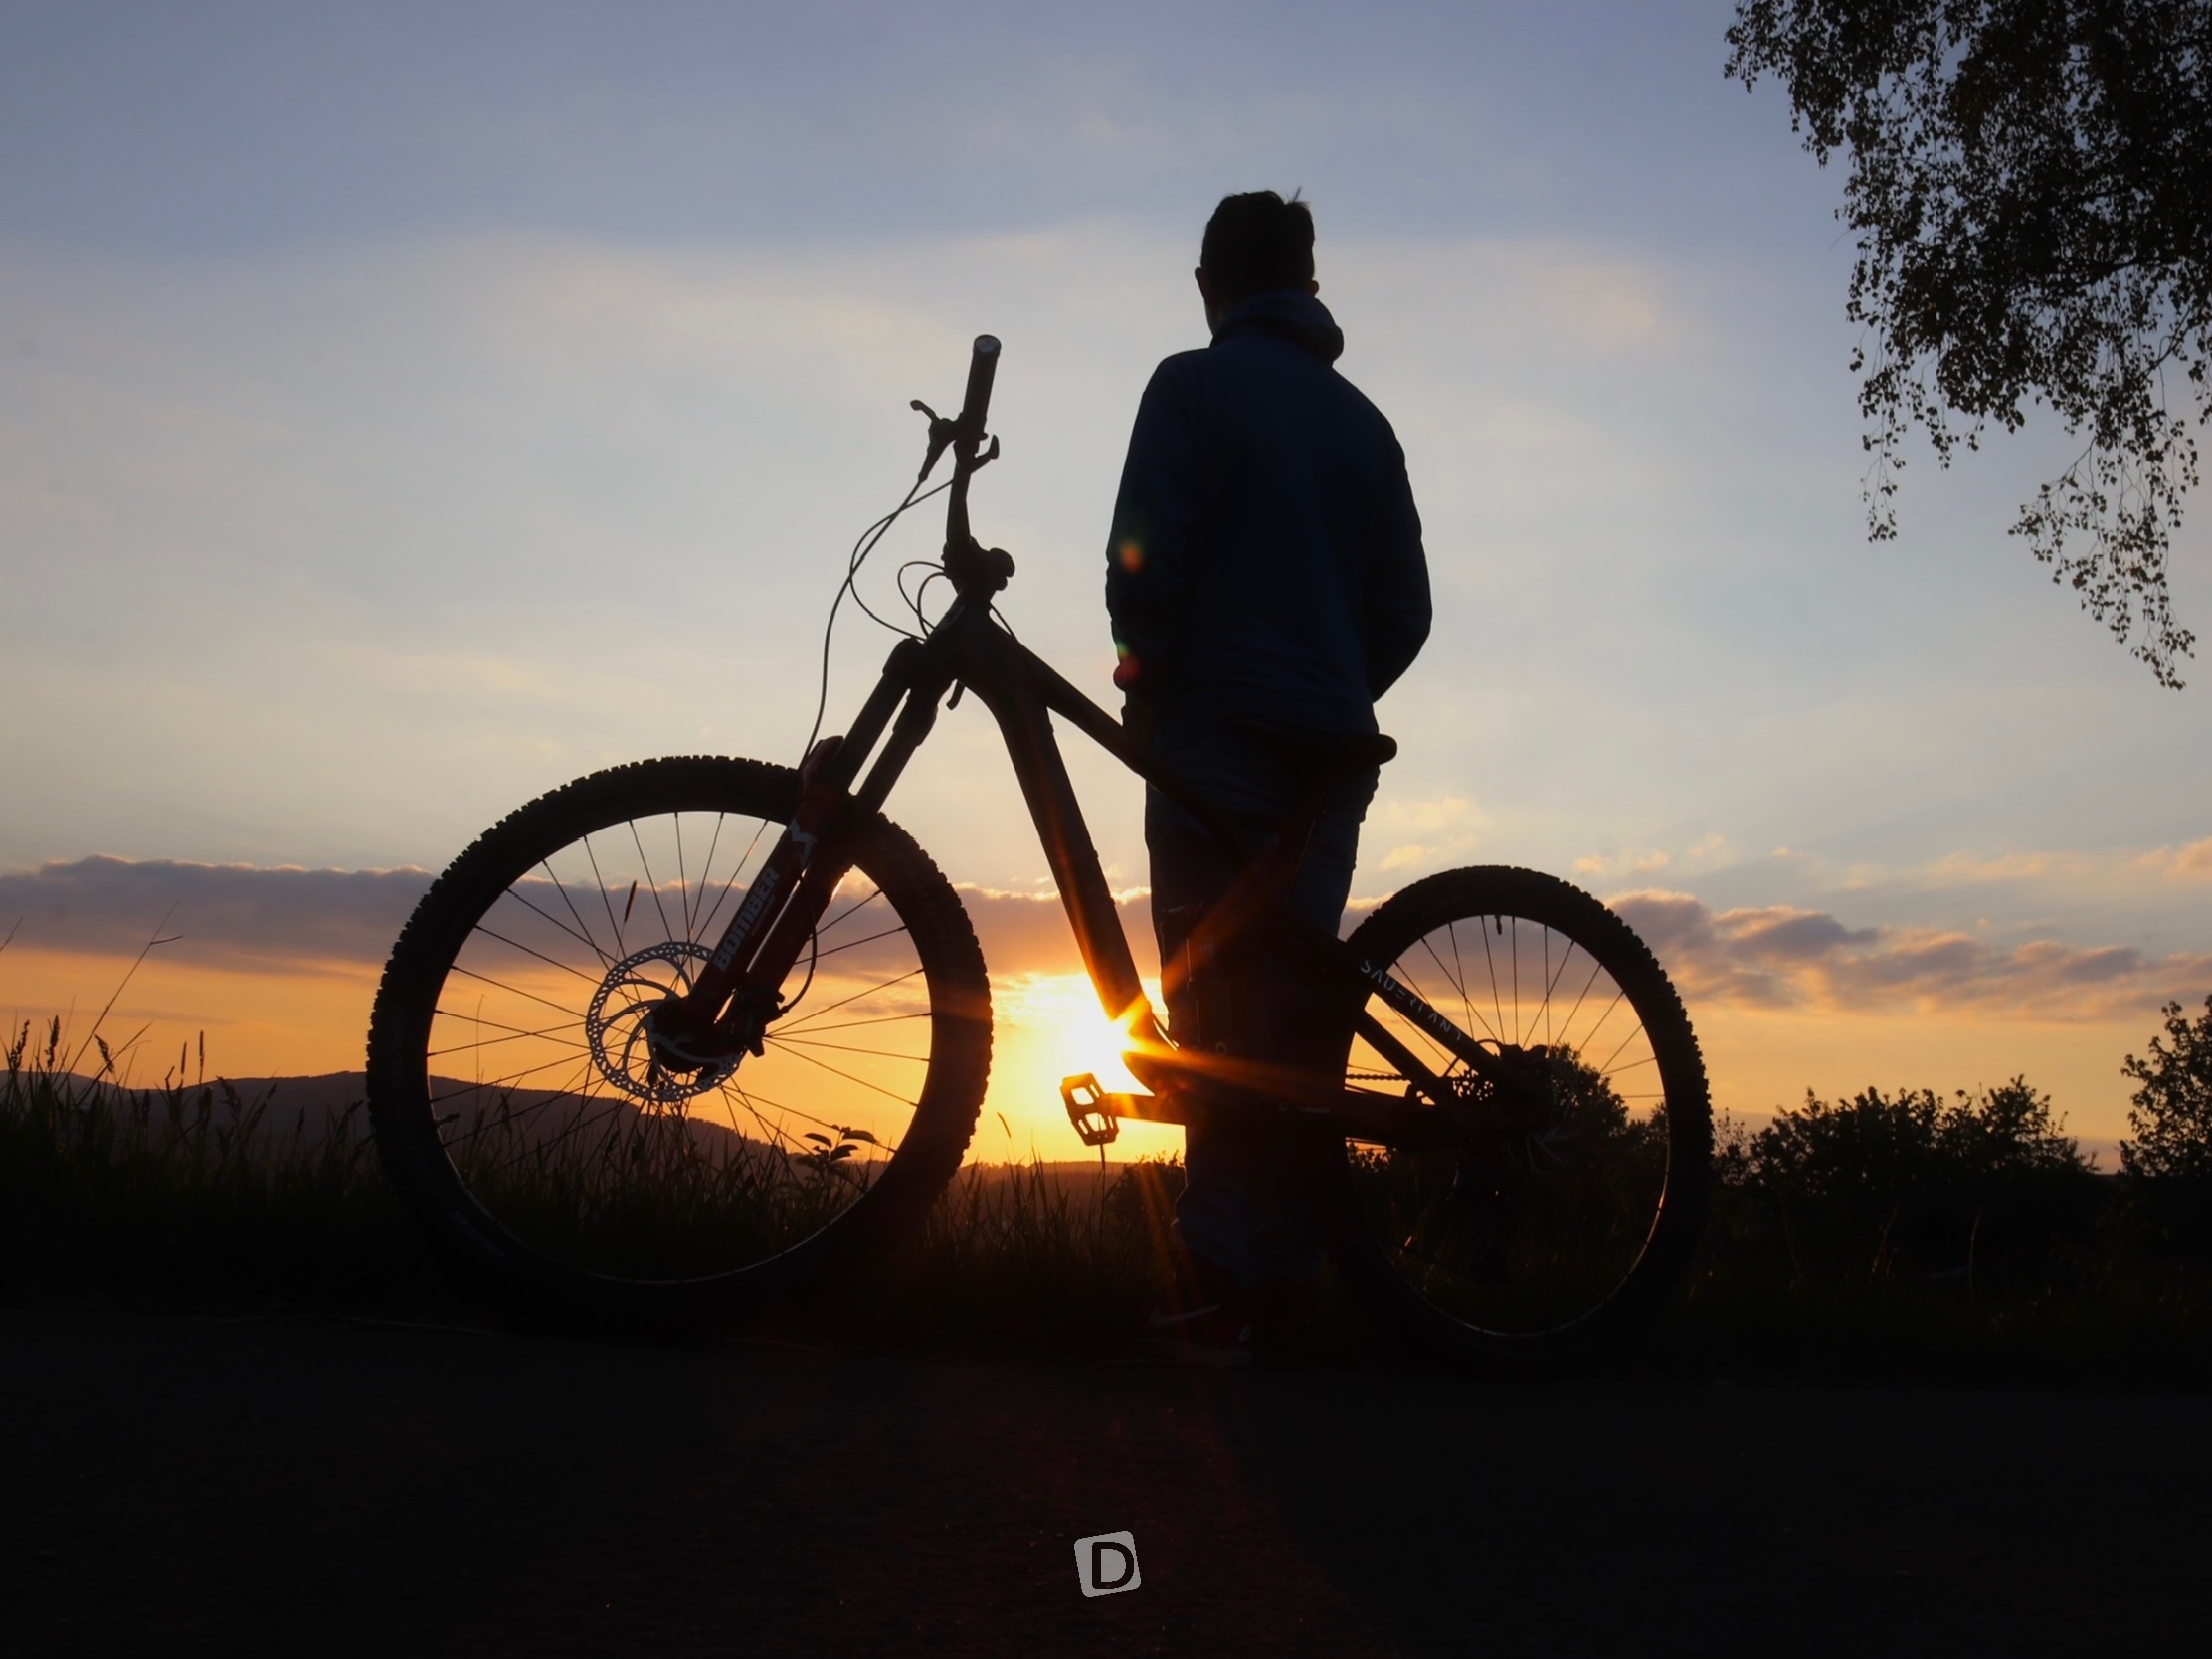 Bike und Fahrer vor Sonnenuntergang im Sauerland.